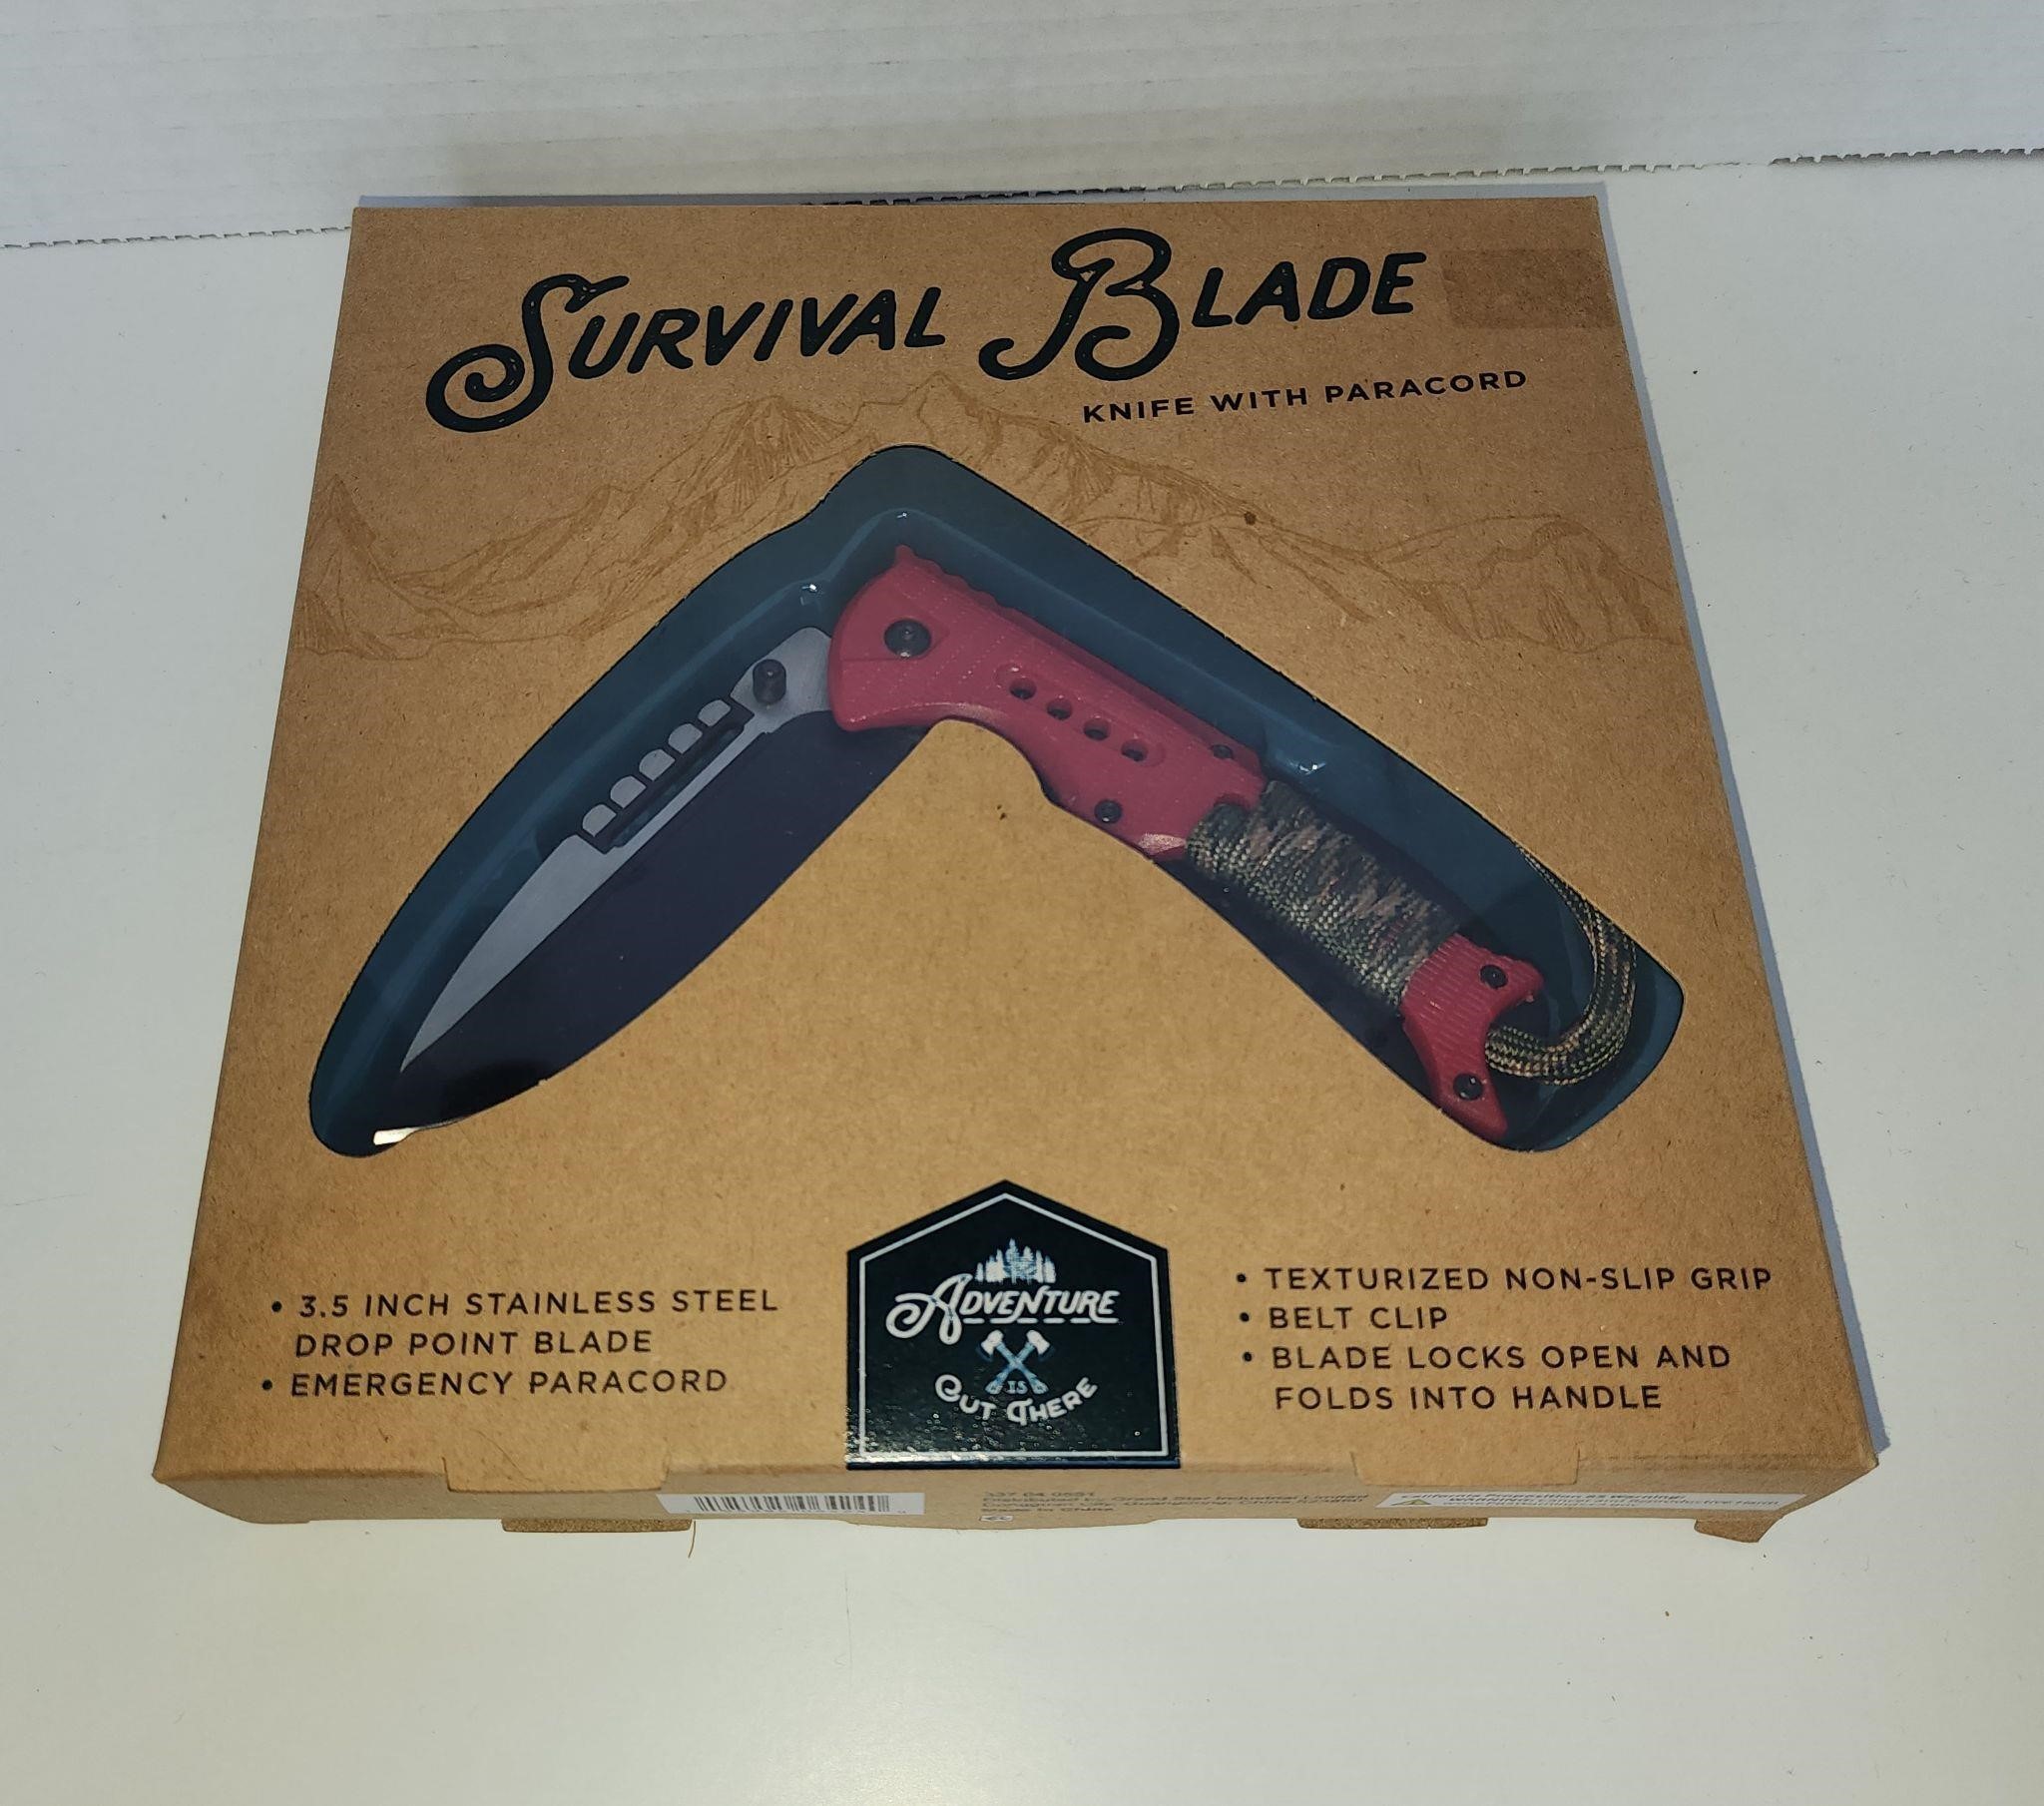 Couteau de survie / Survival blade - knife